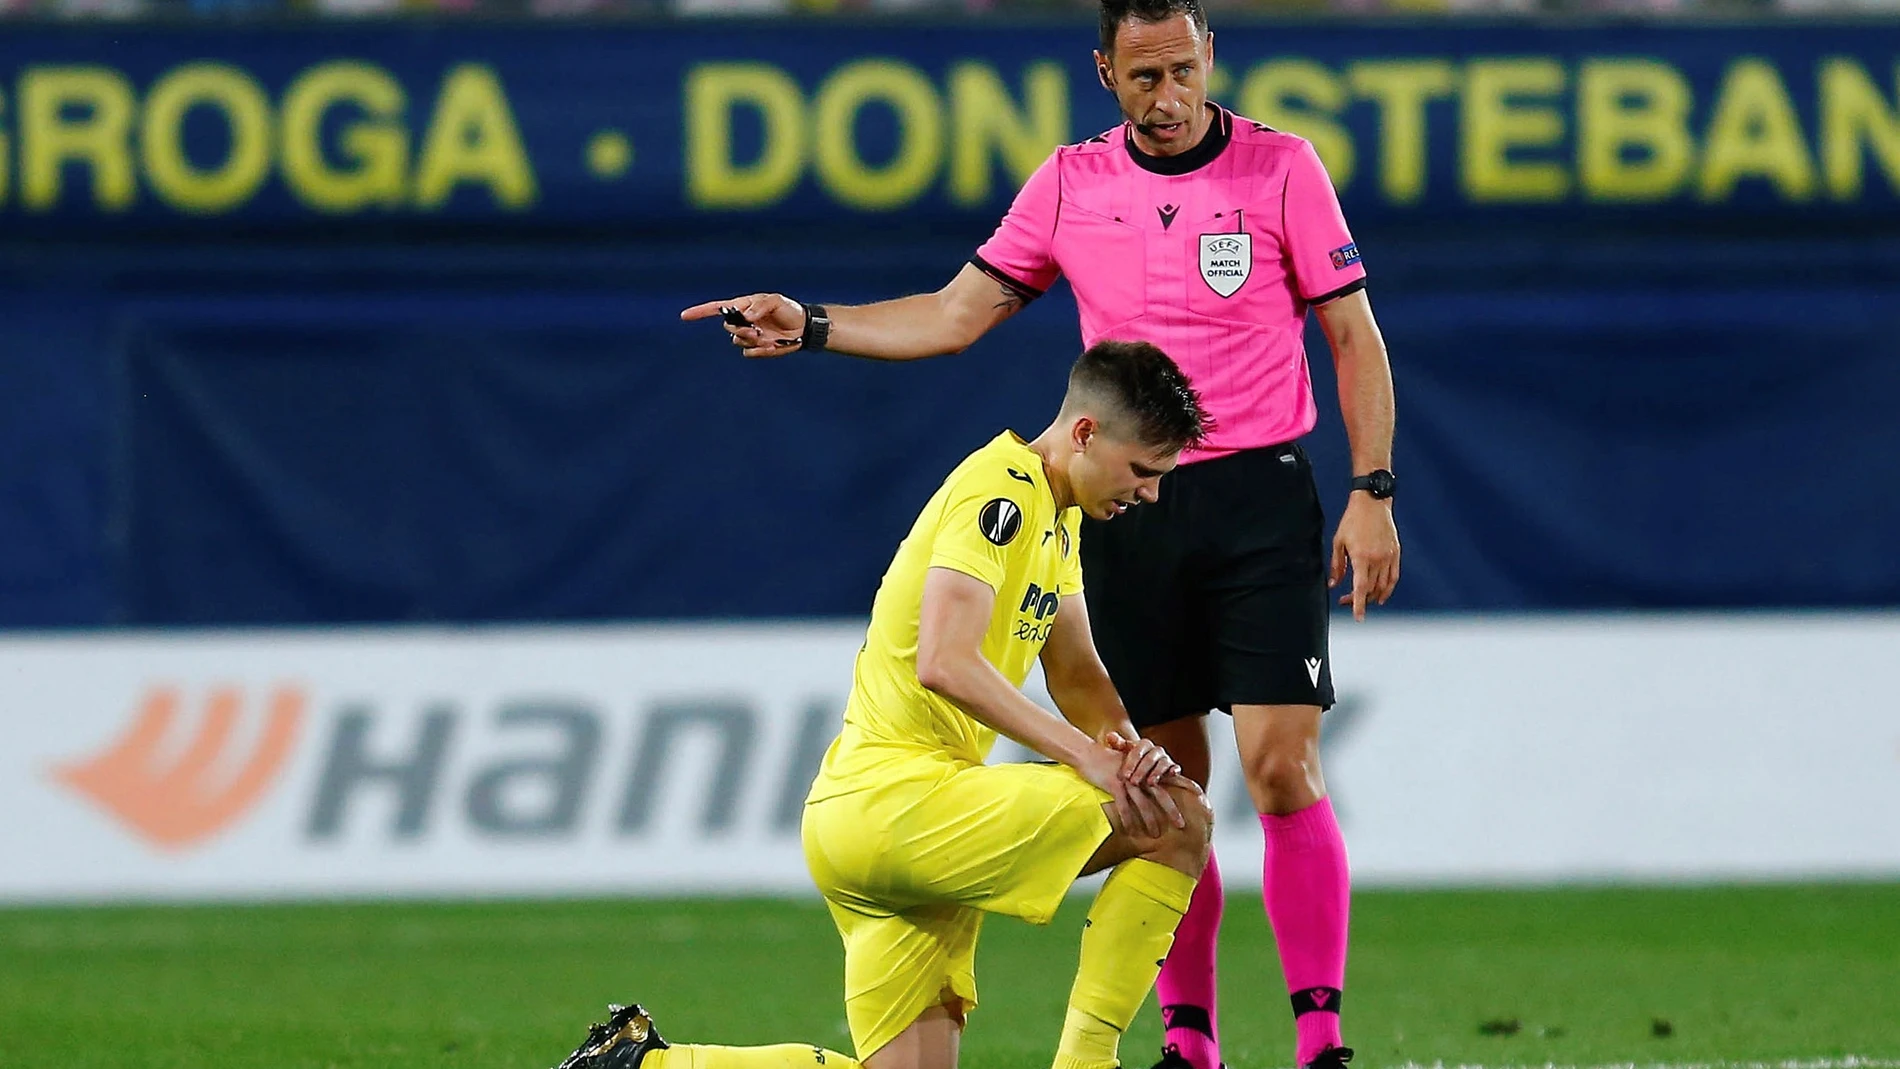 El defensa argentino del Villarreal, Juan Foyth, tras caer lesionado.